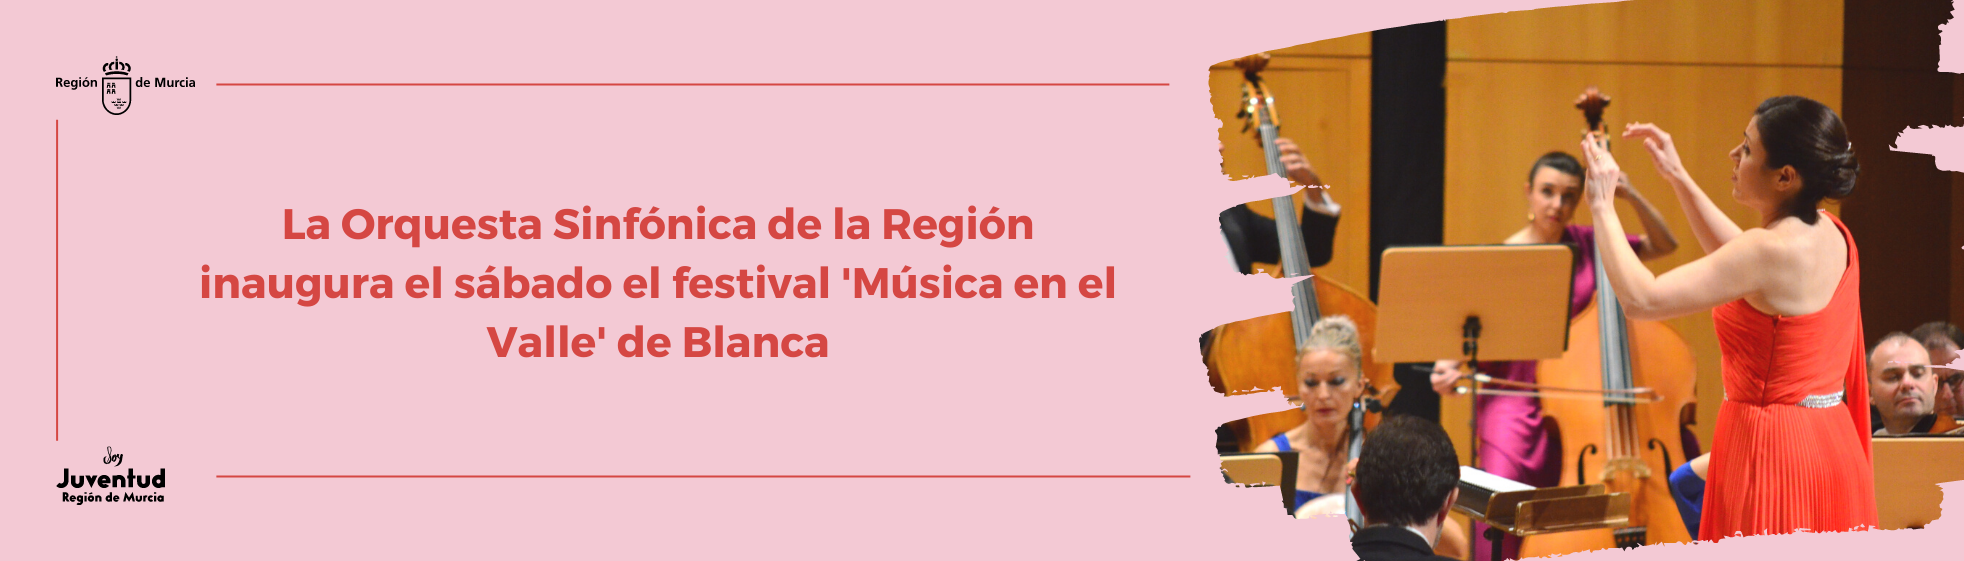 La Orquesta Sinfónica de la Región inaugura el sábado el festival 'Música en el Valle' de Blanca